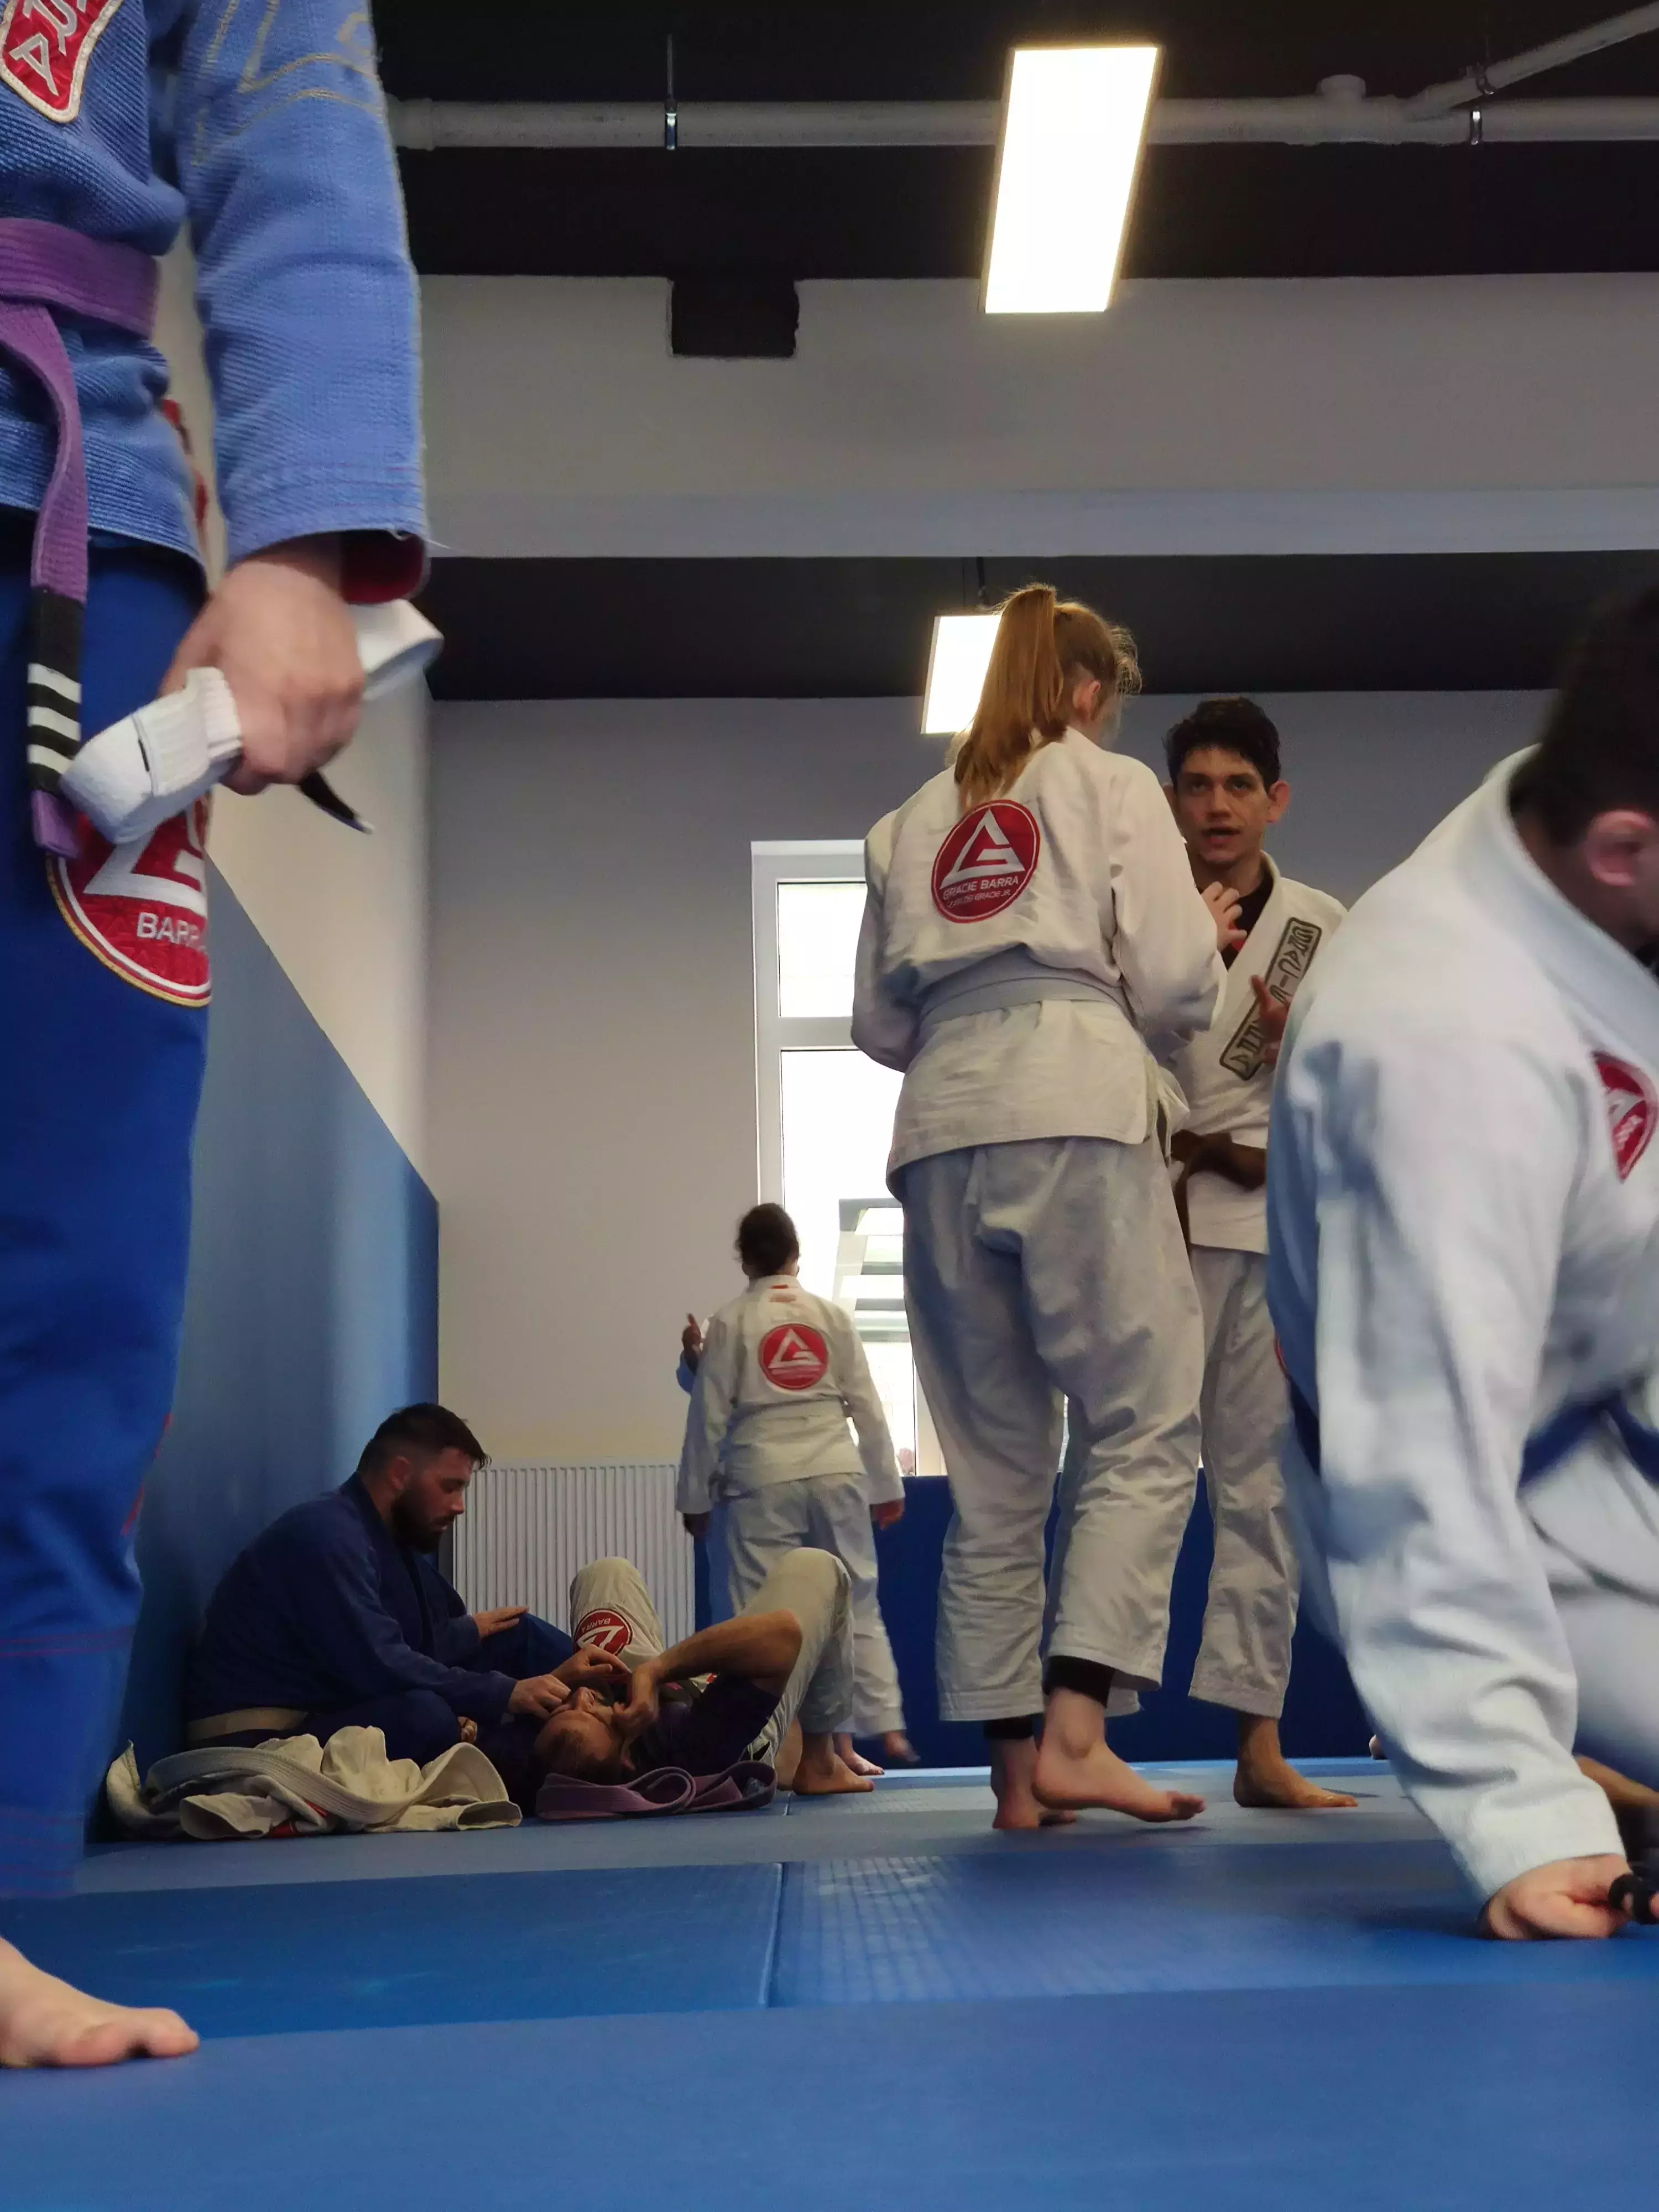 Brazilian Jiu-Jitsu training session